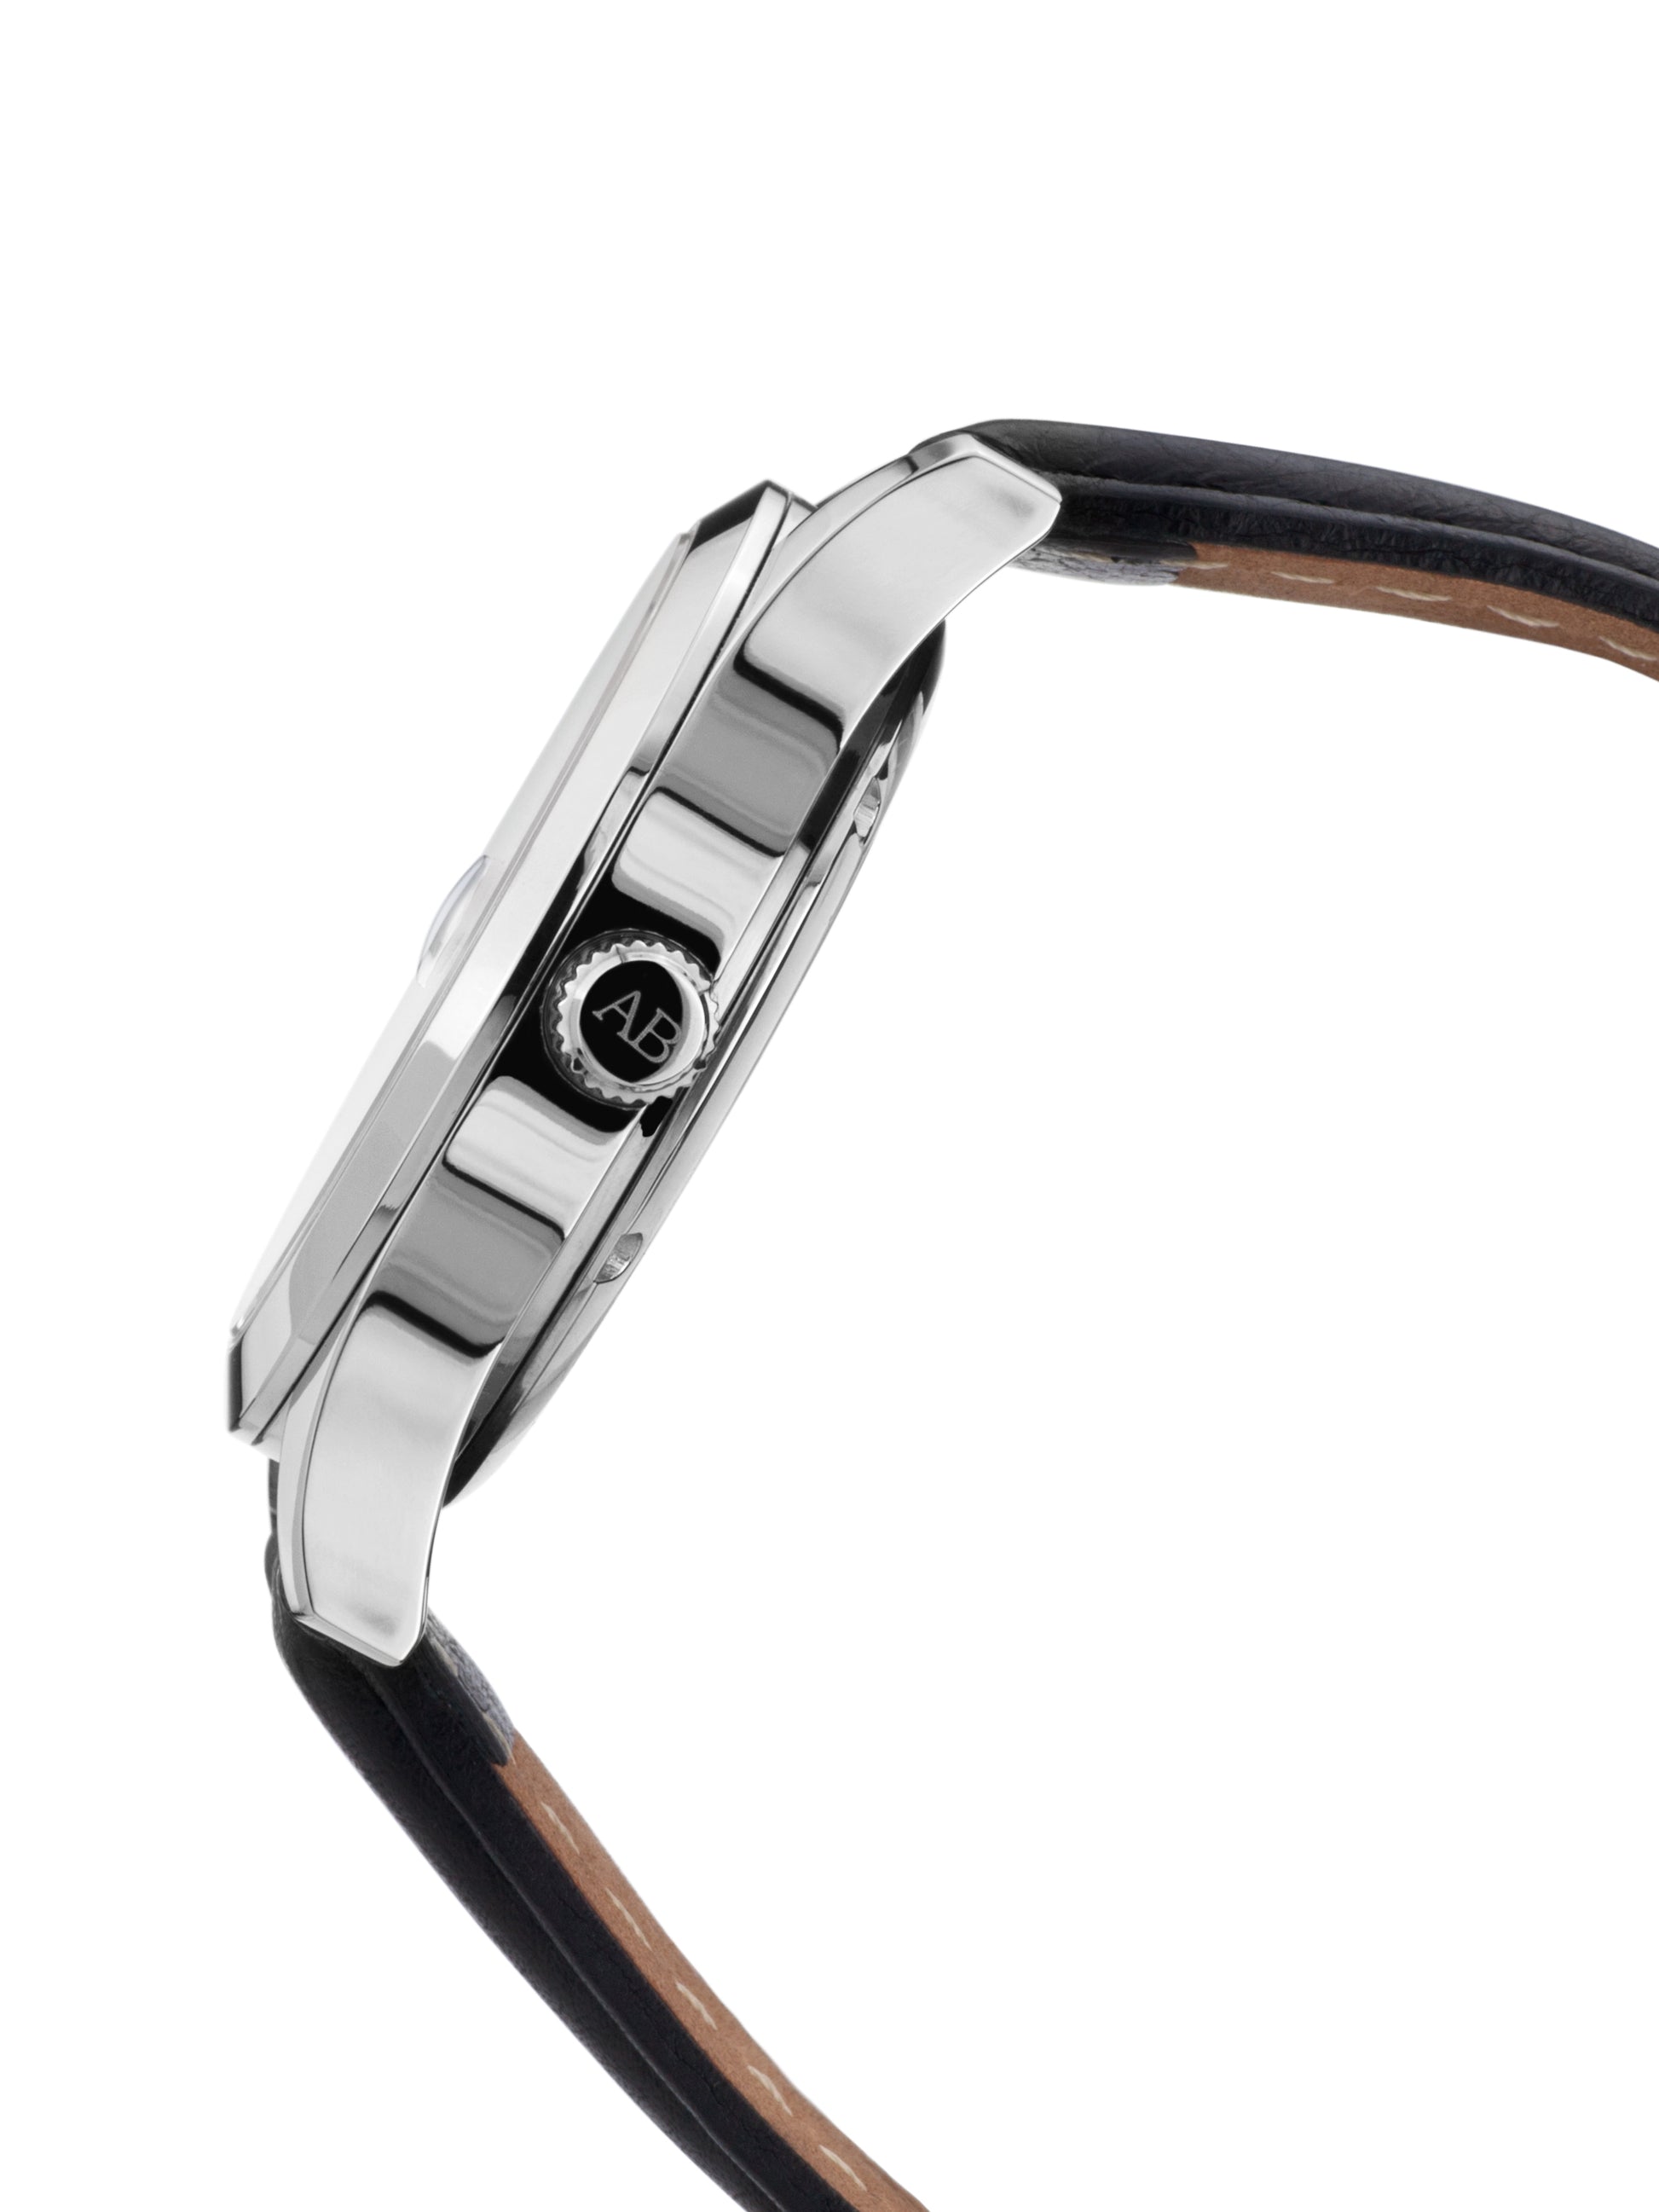 Automatic watches — Empereur — André Belfort — steel black II